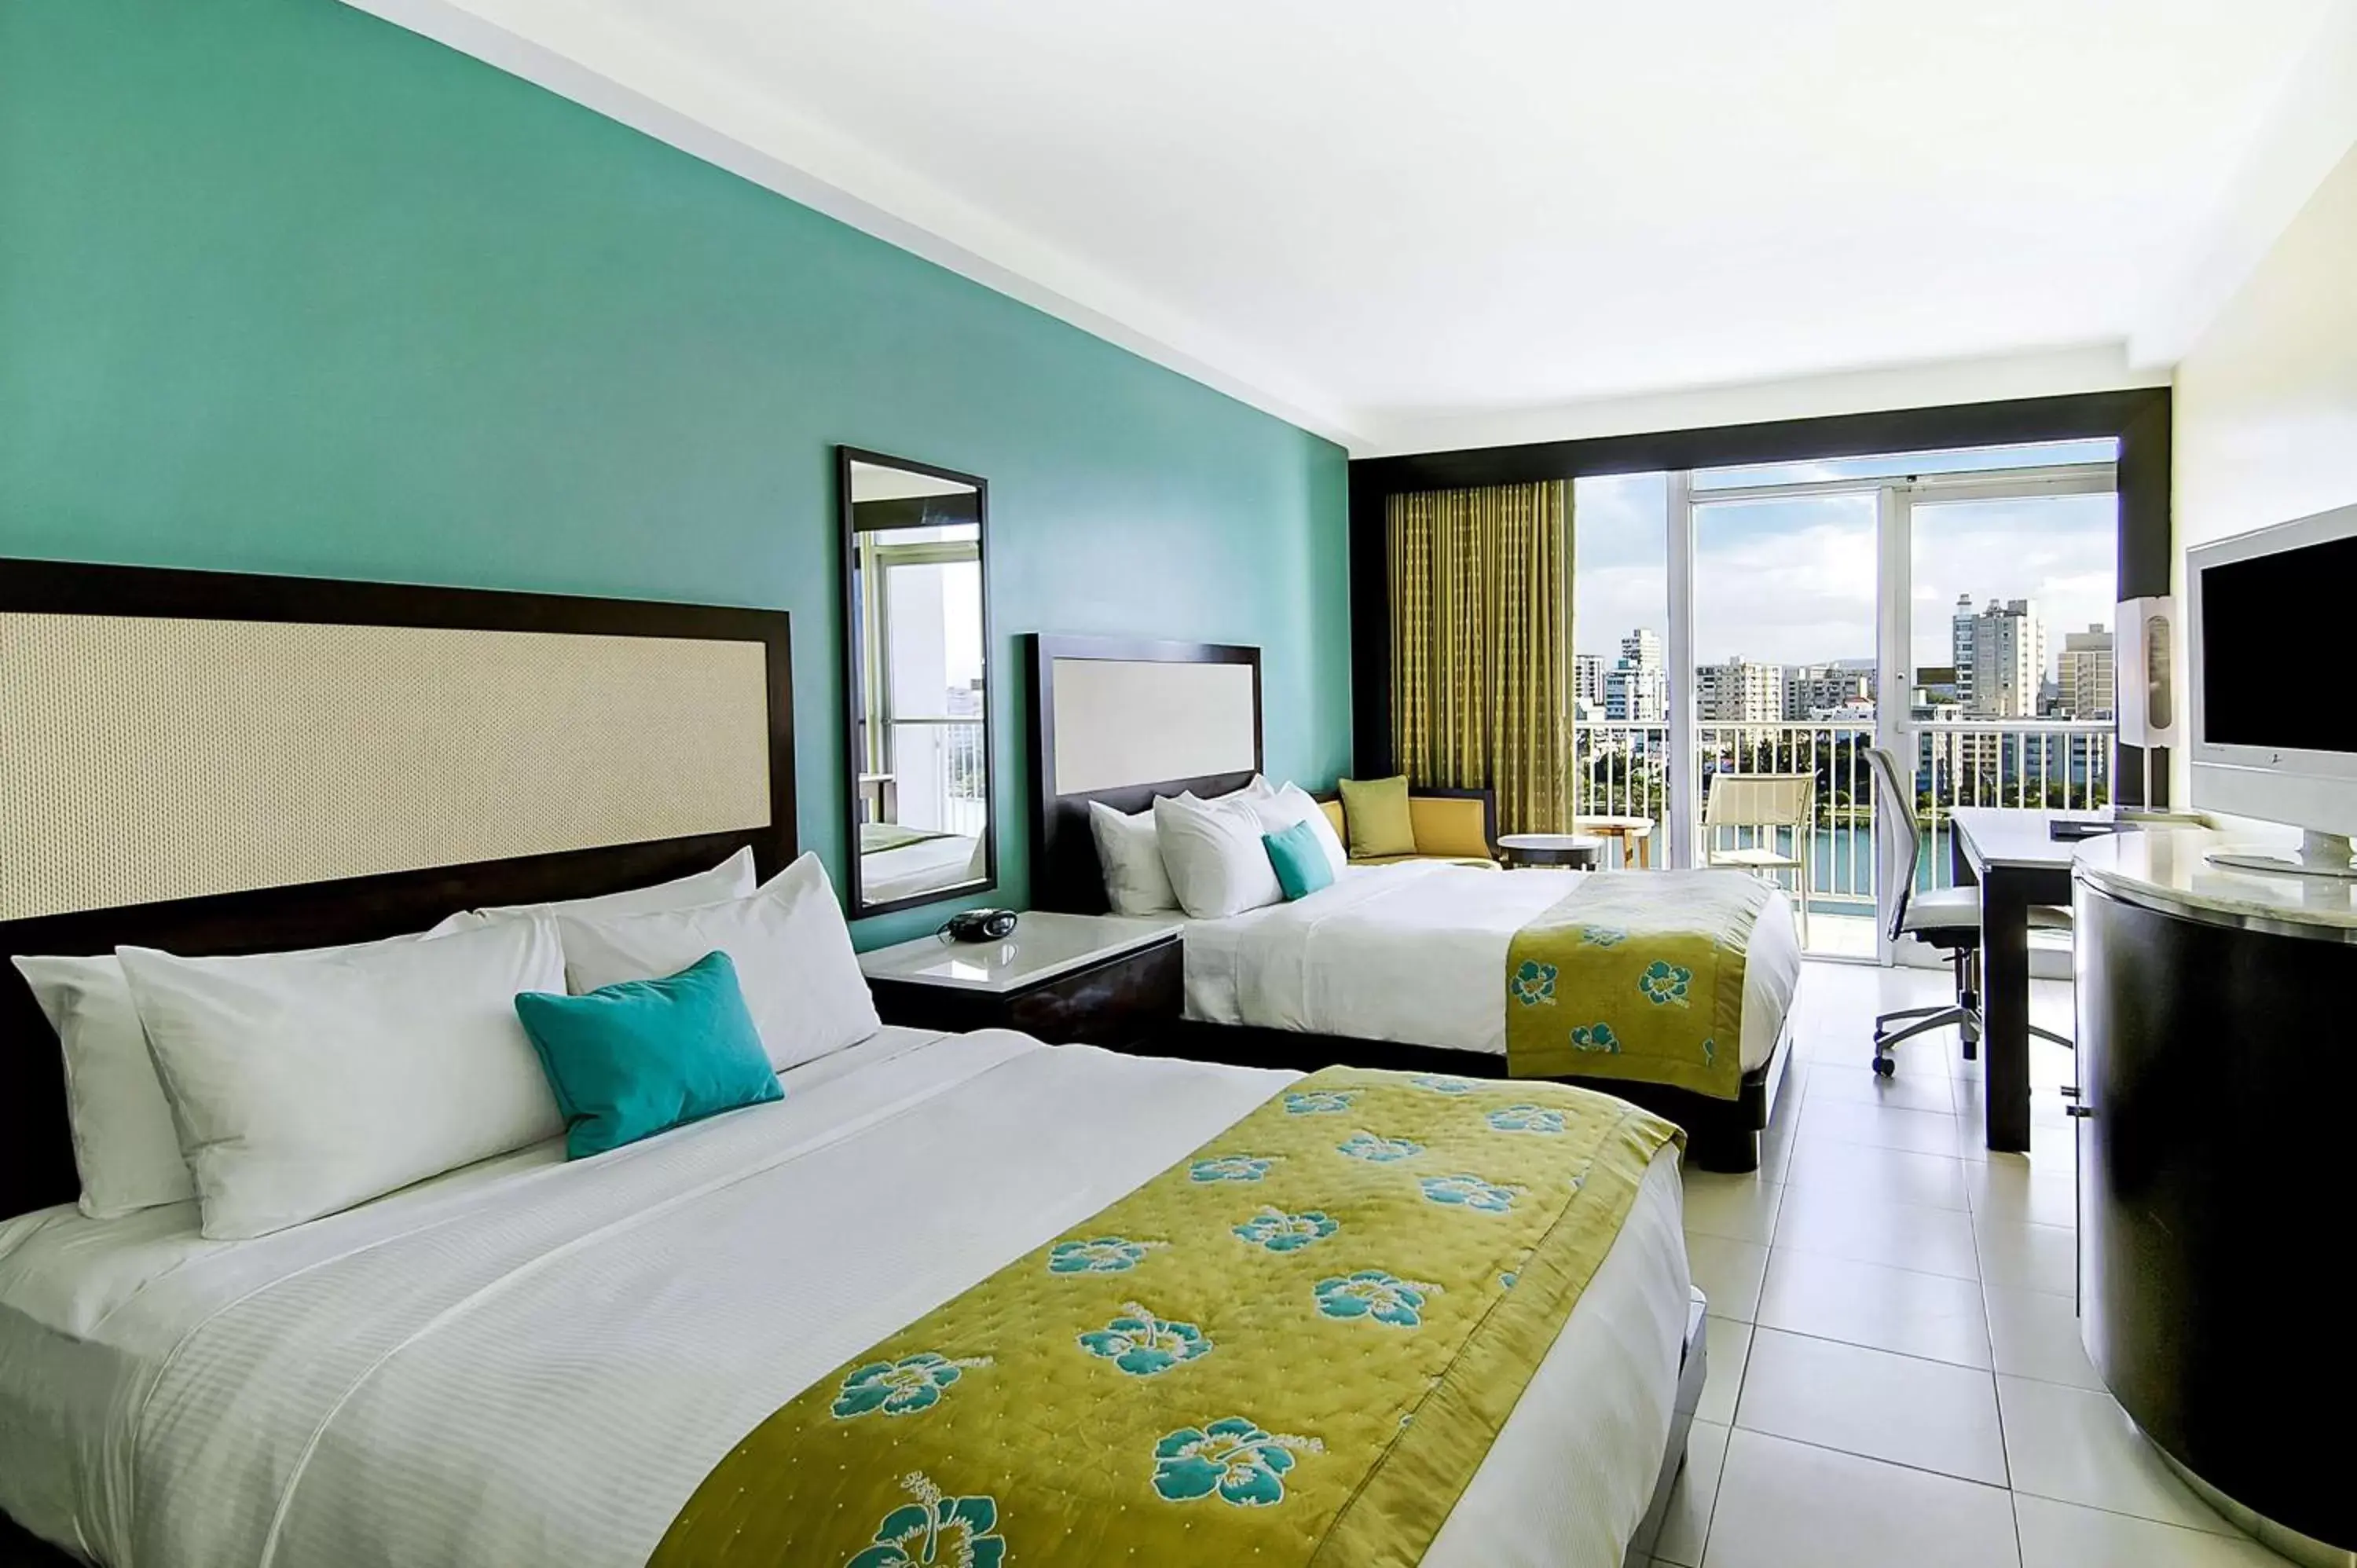 Bedroom in The Condado Plaza Hilton